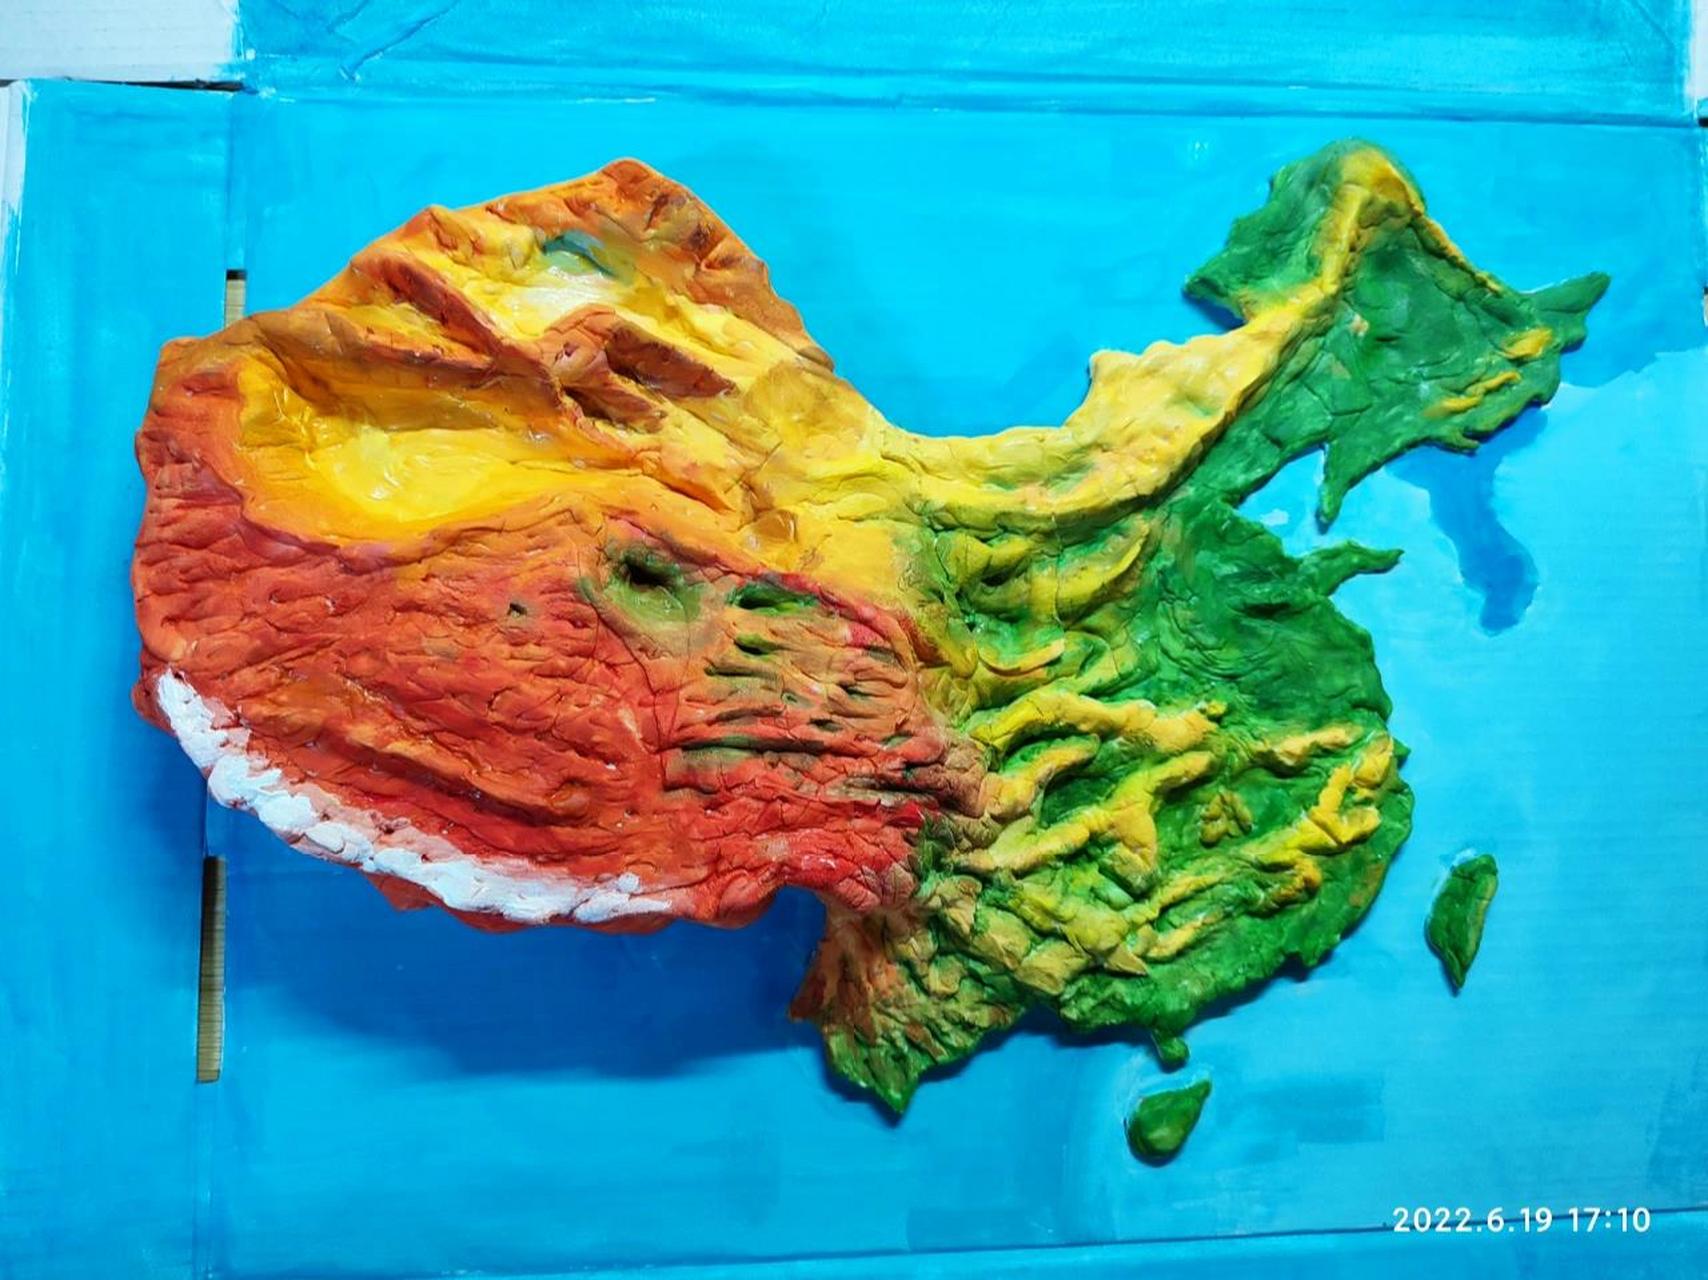 自己制作的中国地形图立体模型,真漂亮  没想到随心想的一个作品,中国